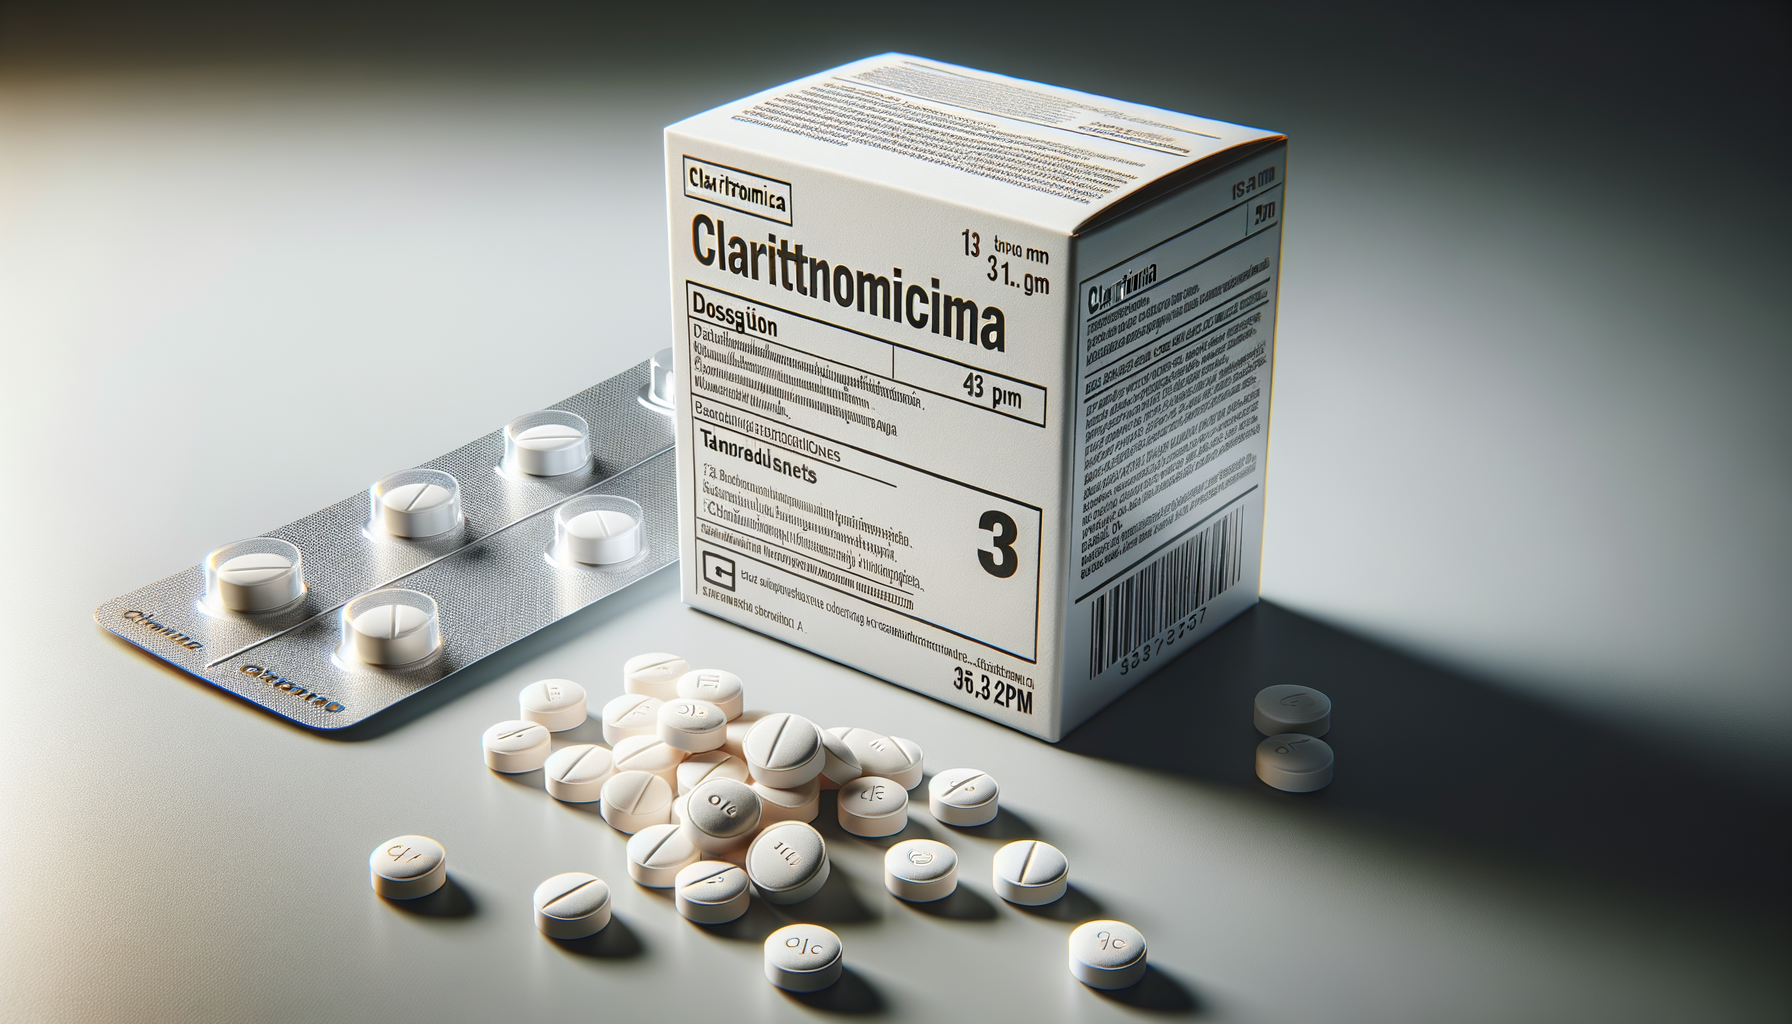 Come prendere antibiotico claritromicina?